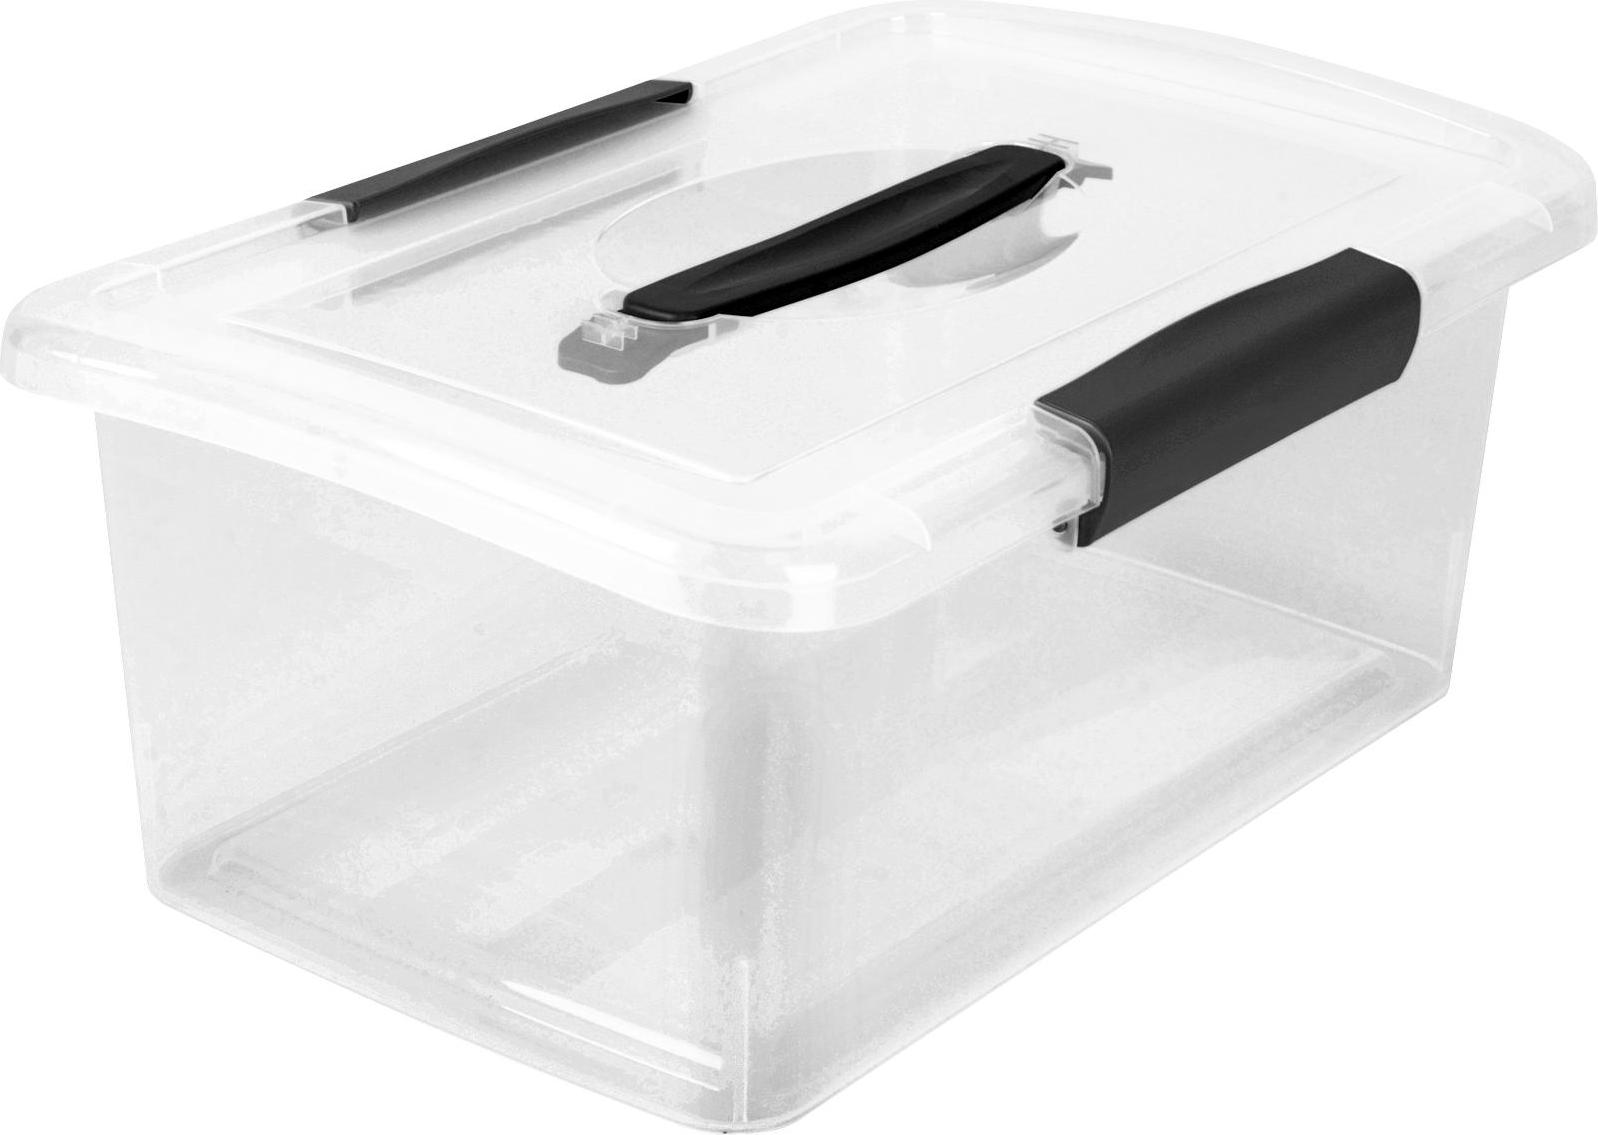 Ящик для хранения Keeplex / Киплекс Vision с защелками и ручкой, из полипропилена, прозрачный, 370х274х148мм, 9л / органайзер для вещей - фотография № 1